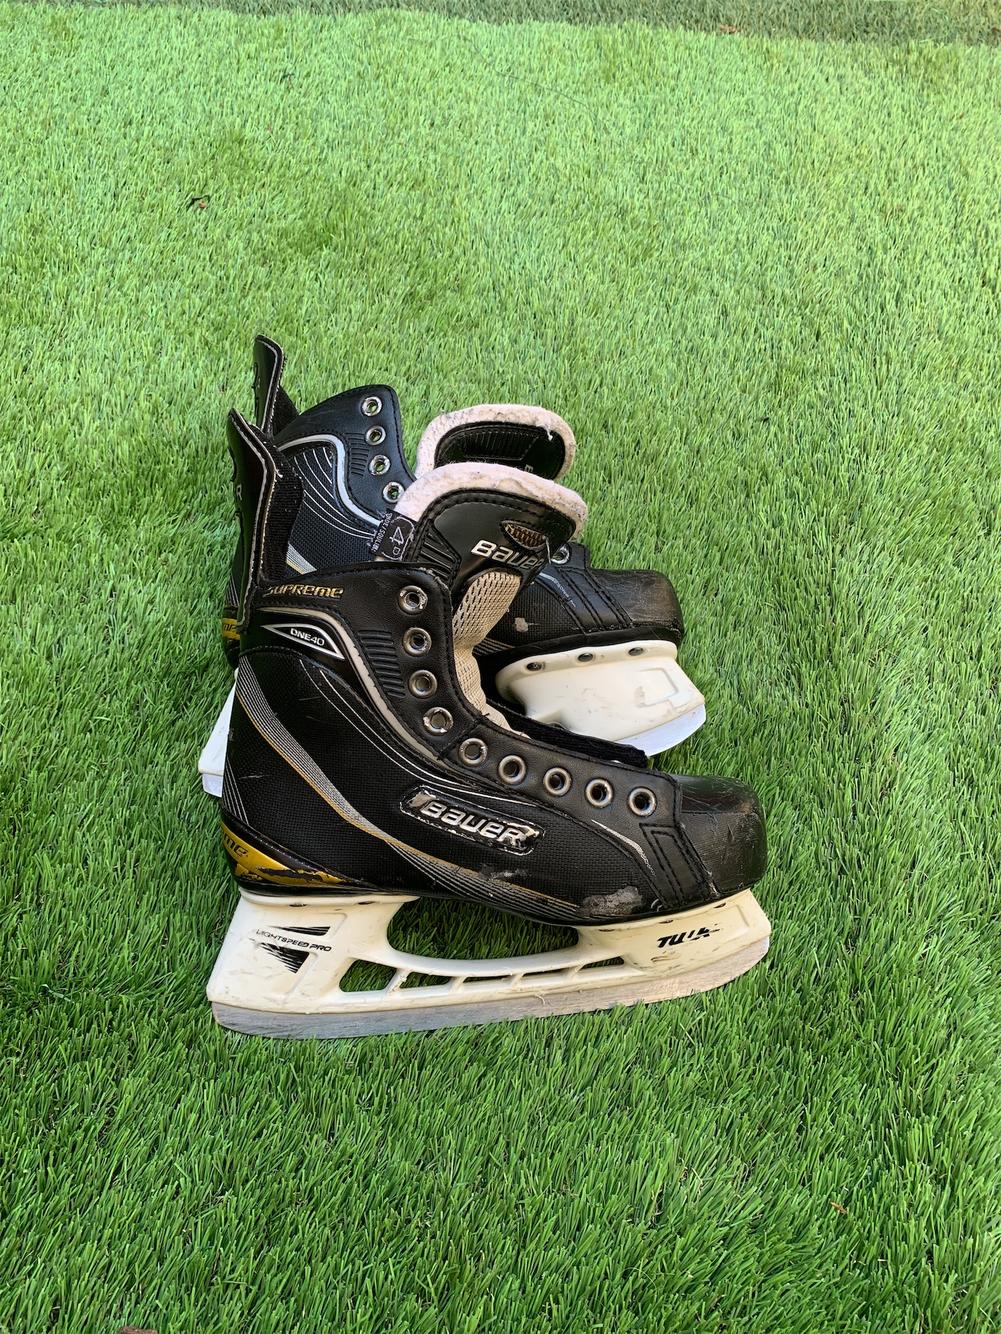 Bauer Supreme 140 Junior Hockey Skate Size 4 